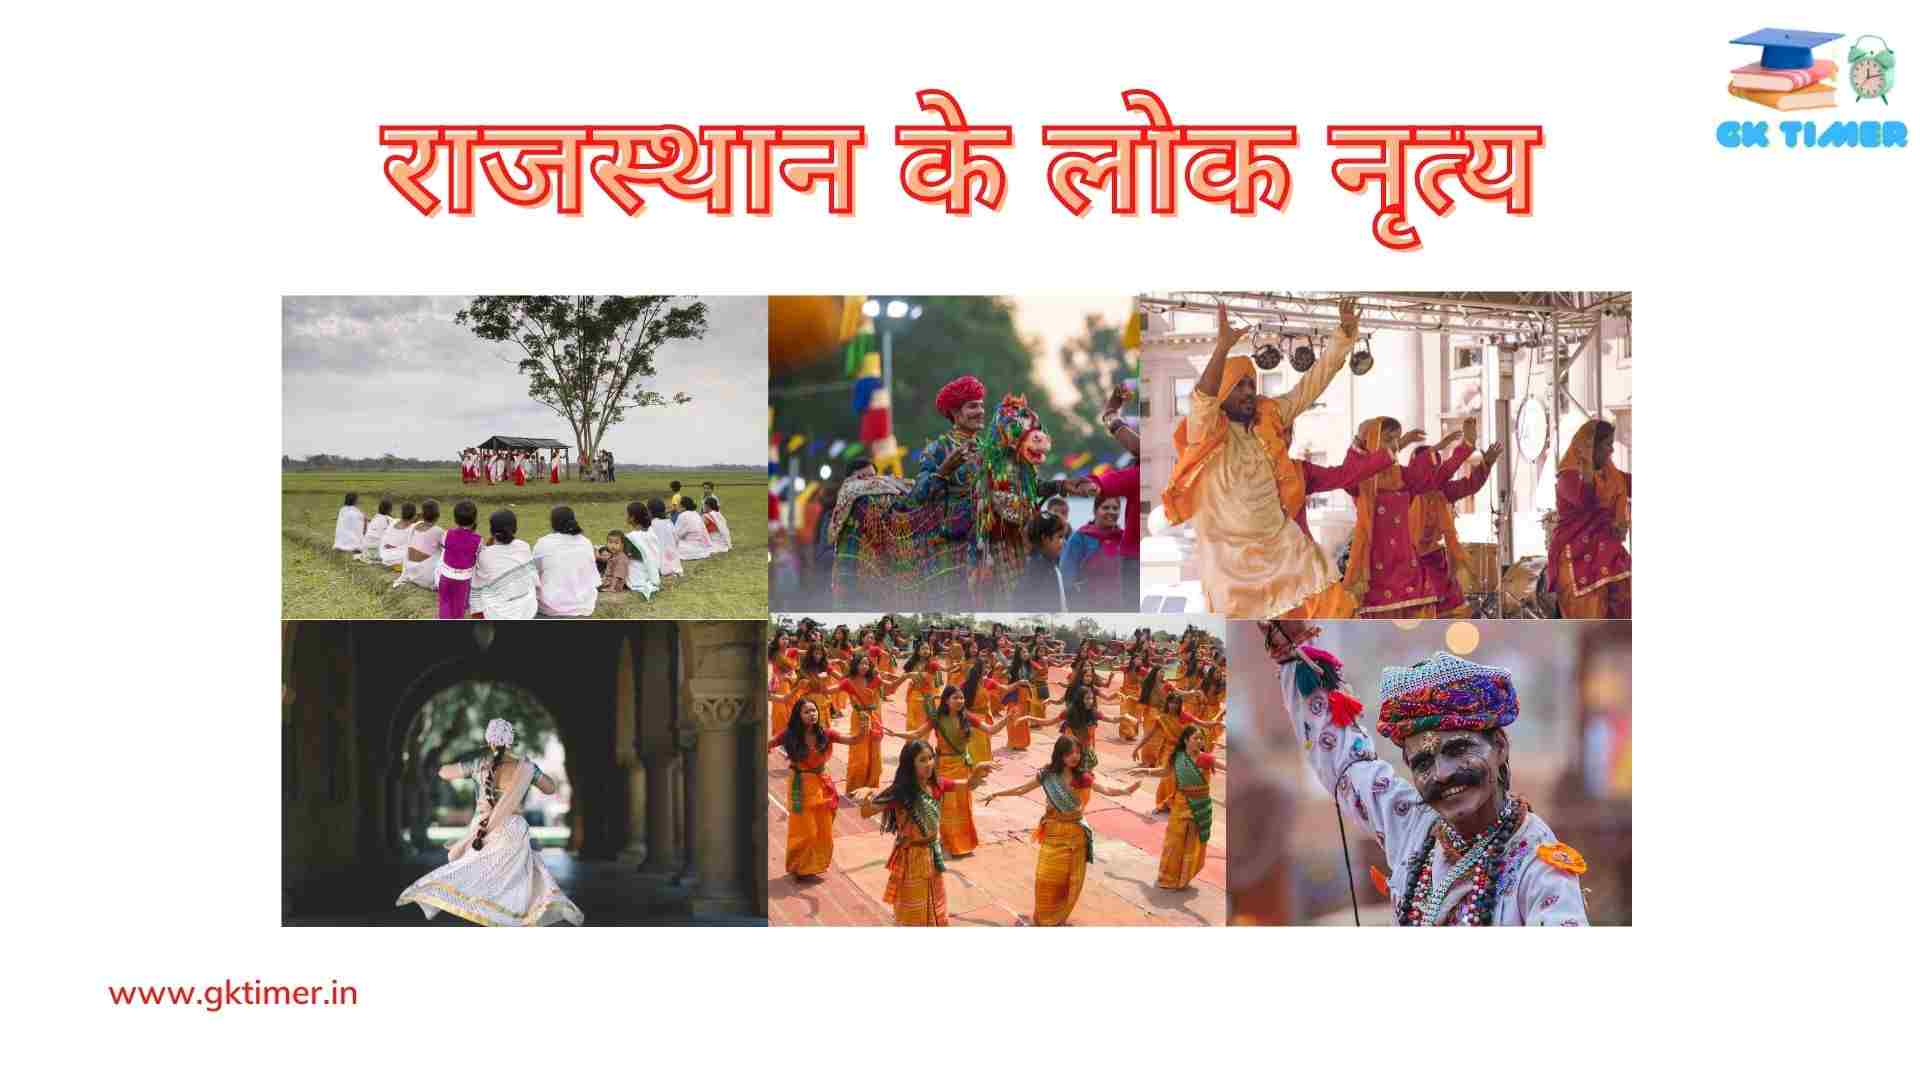 राजस्थान के लोकप्रिय लोक नृत्य(भवई, गैर, ख्याल, घूमर) | Traditional folk dances of Rajasthan in Hindi